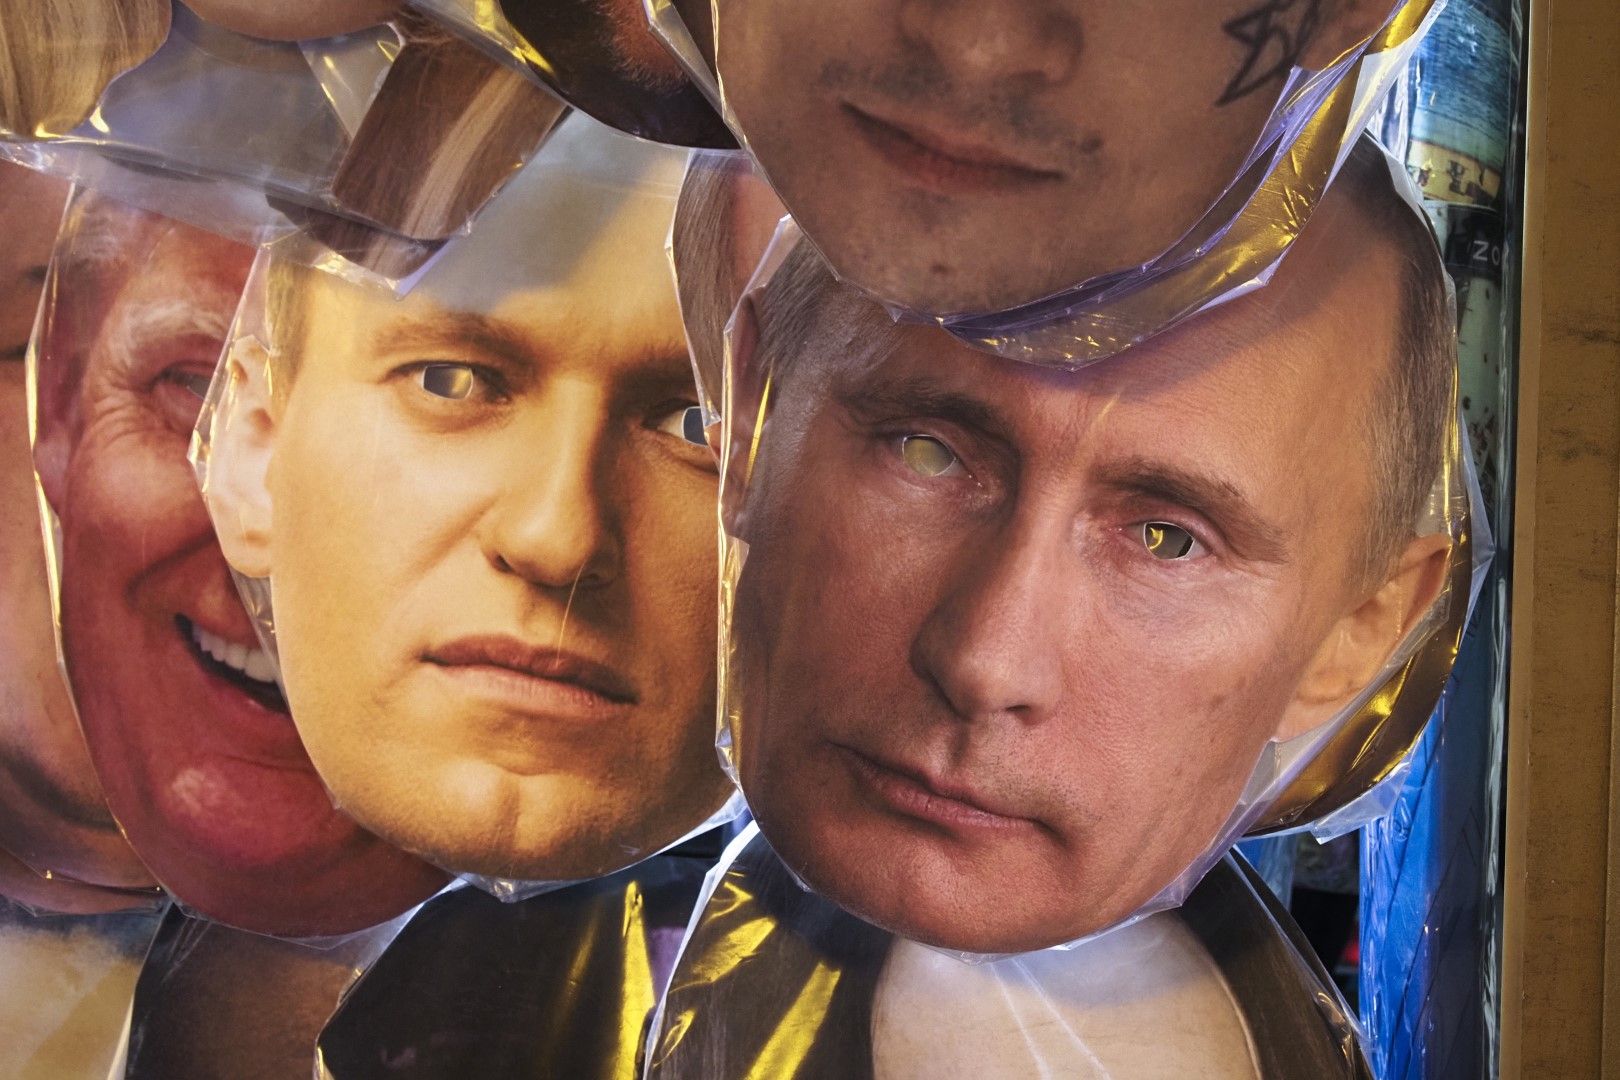 Маски за лице, изобразяващи руския президент Владимир Путин вдясно и руския опозиционен лидер Алексей Навални, вляво от Путин, наред с други, изложени за продажба в уличен магазин за сувенири в Санкт Петербург, Русия, 17 януари 2021 г.